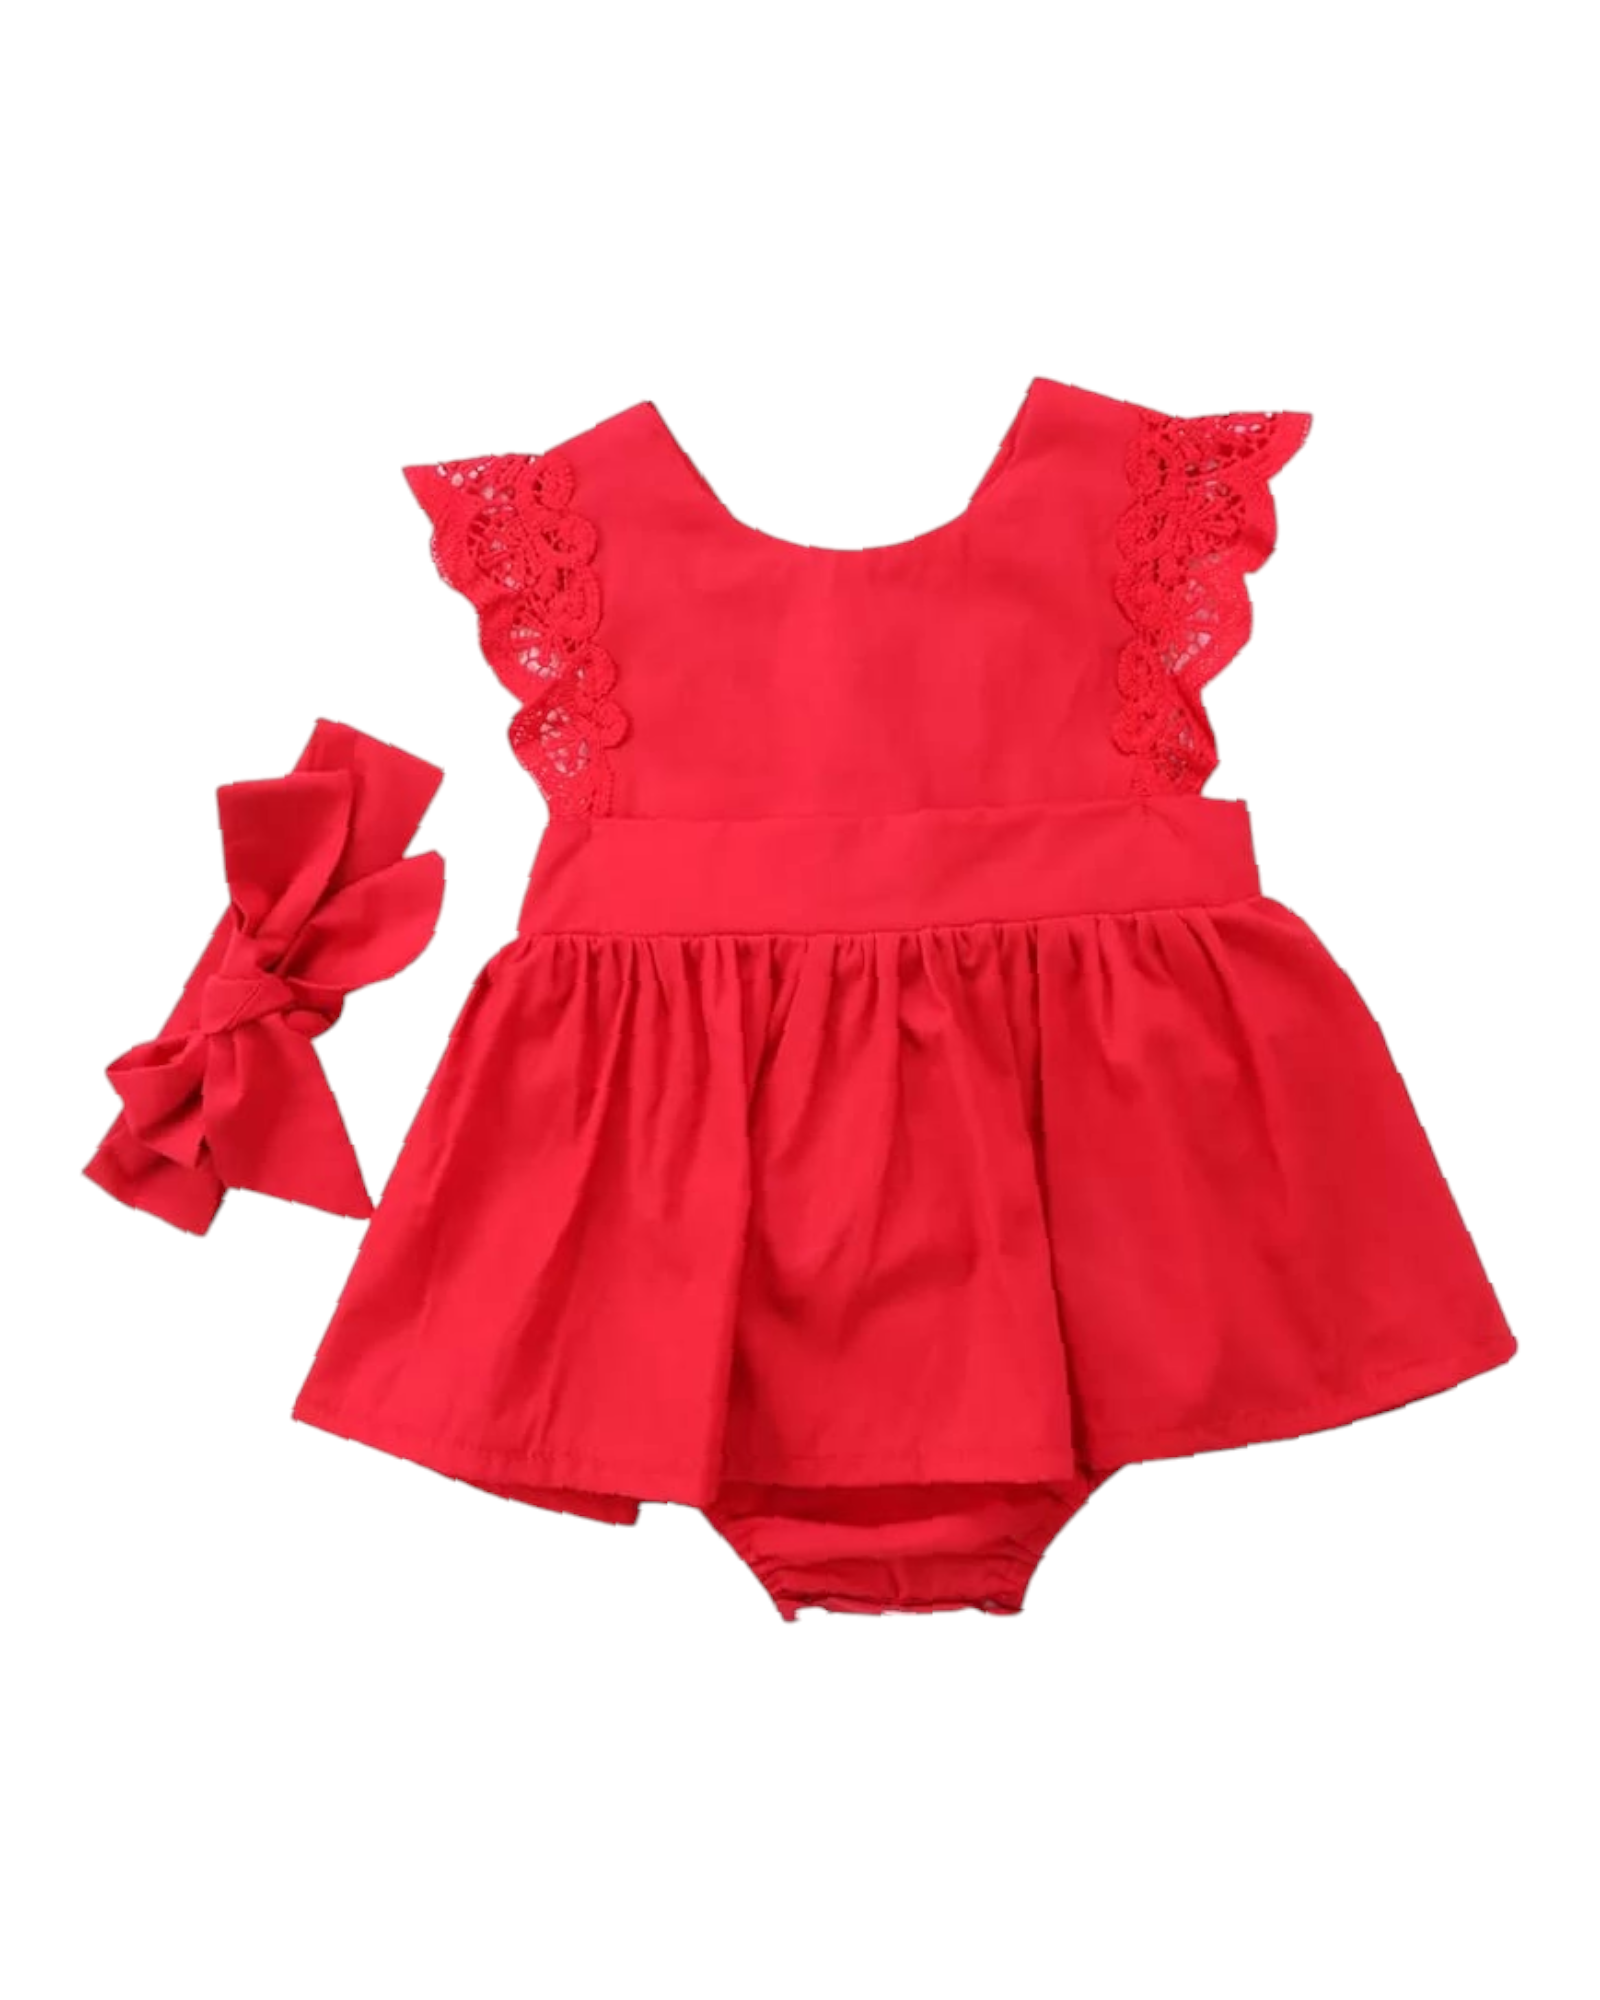 Body vestido rojo con balaca para bebés 